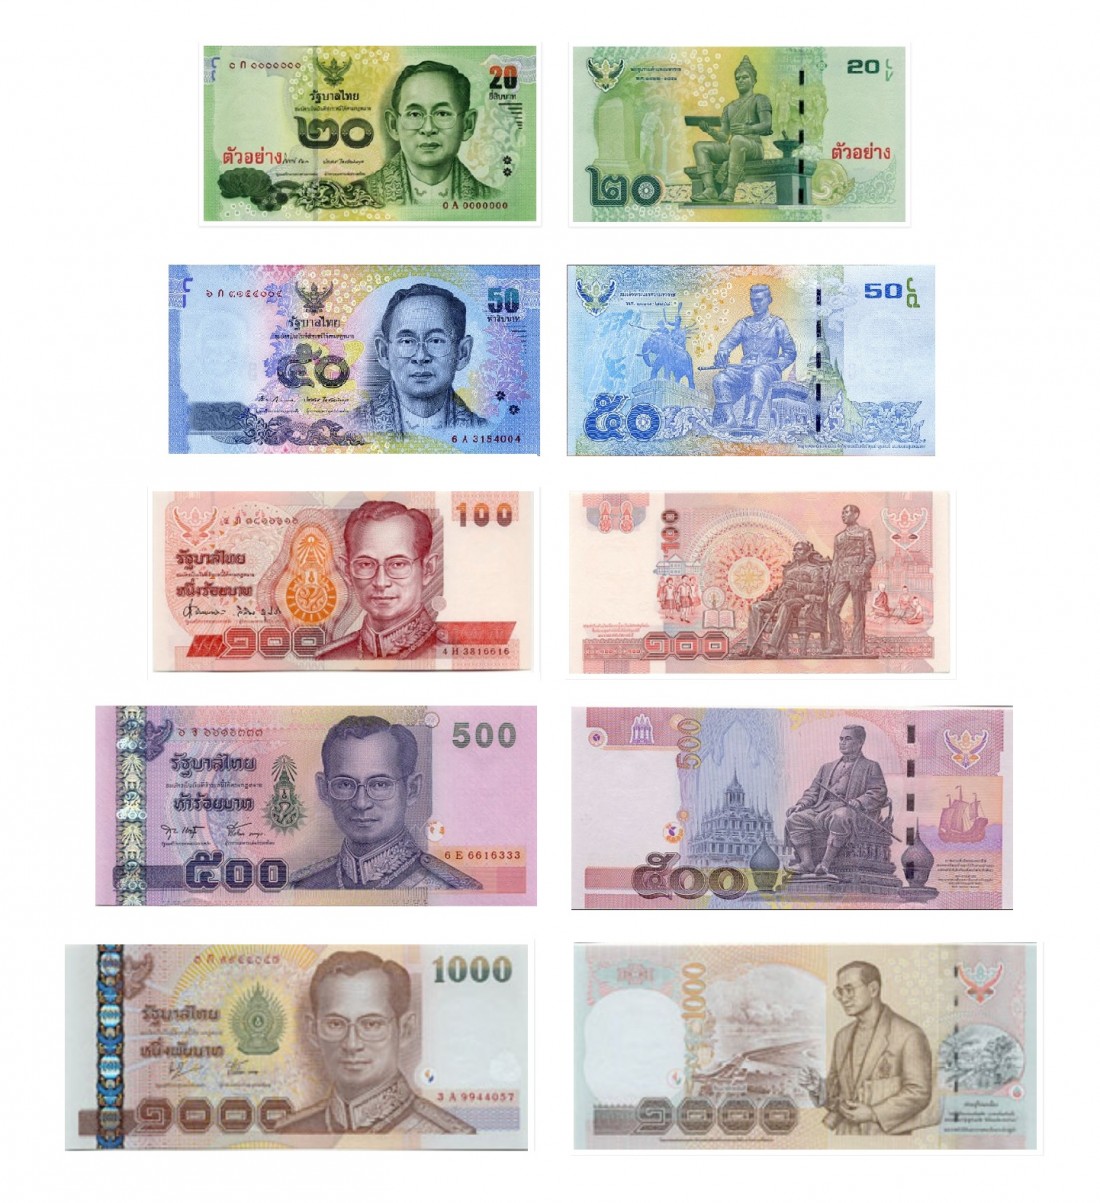 واحد پول تایلند بات Baht راهنمای چنج دلار به بات هزینه سفر